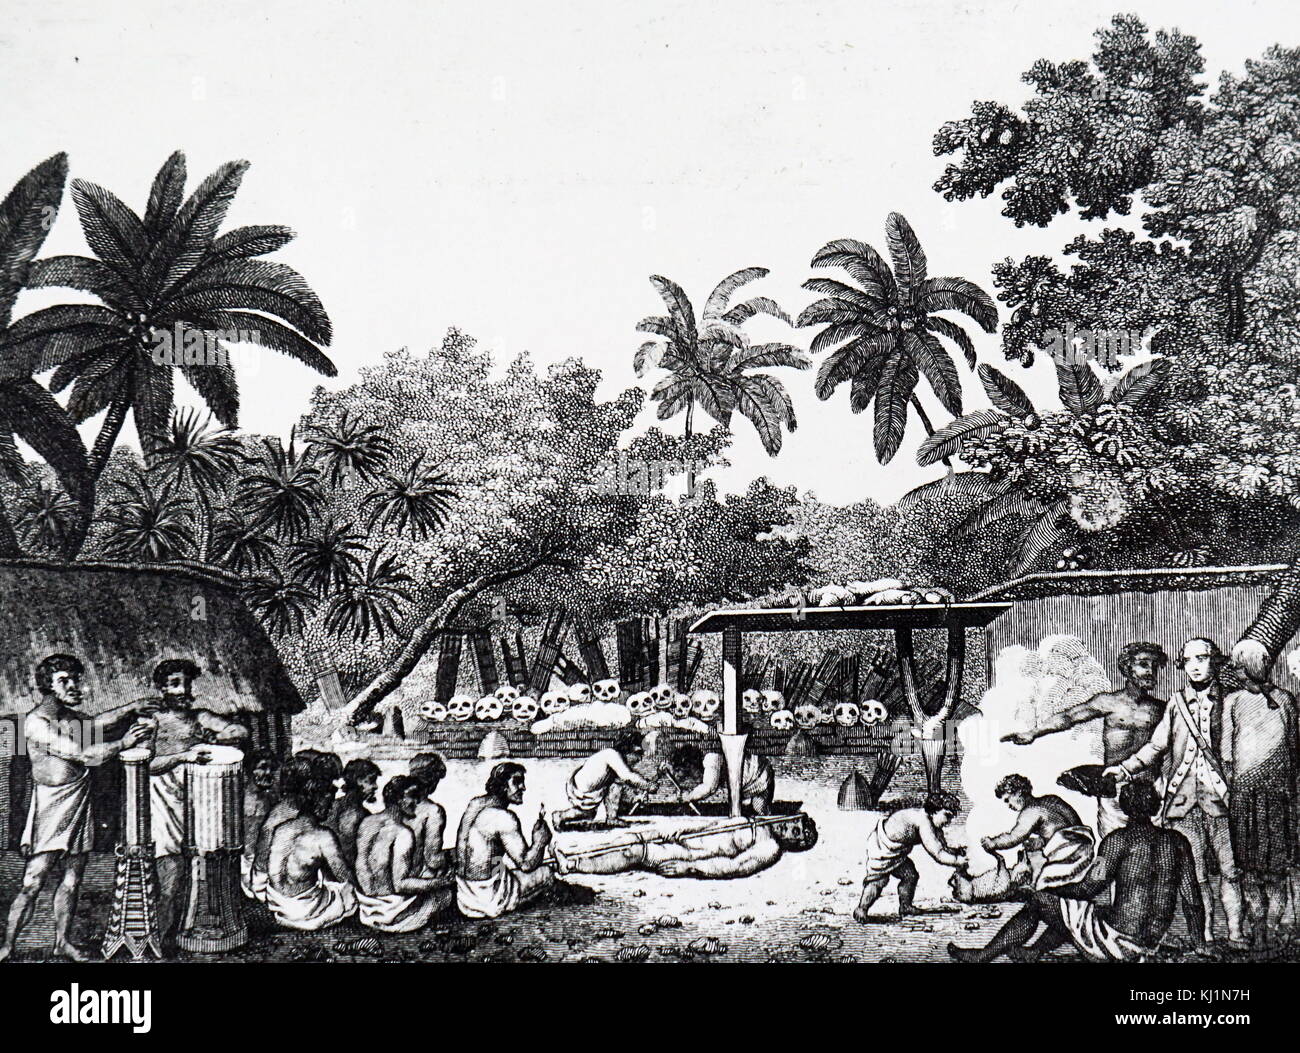 Incisione raffigurante il Capitano James Cook assistendo a un sacrificio umano a Tahiti. James Cook (1728-1779) un esploratore britannico, navigator, cartografo, e capitano della Royal Navy. Datata del XIX secolo Foto Stock